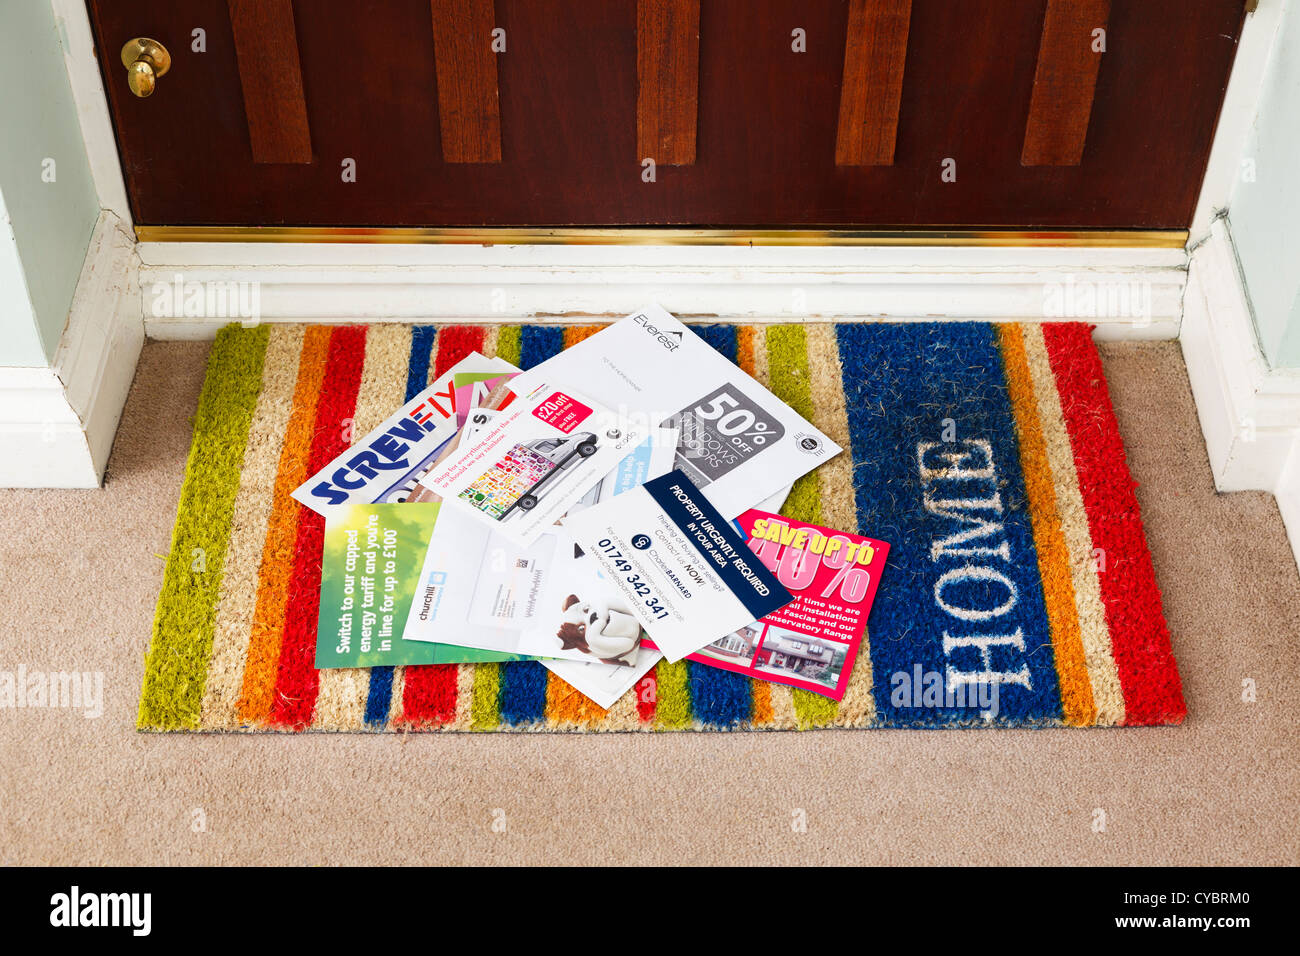 La posta indesiderata, su uno zerbino in una casa, Regno Unito - dettagli modificati per la sicurezza Foto Stock